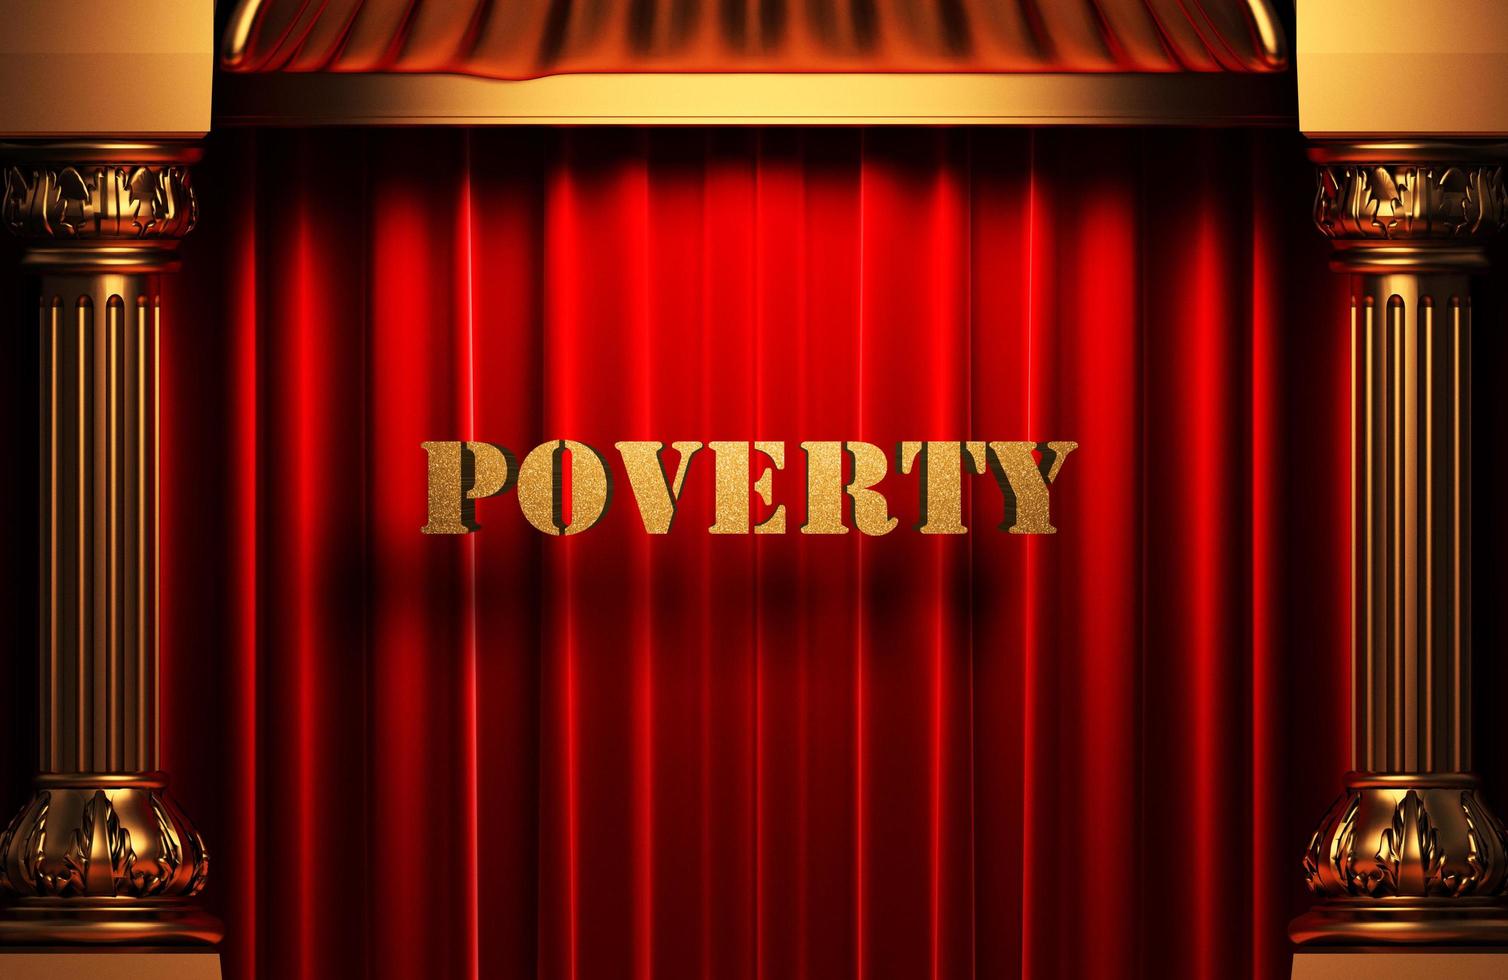 palavra de pobreza de ouro na cortina vermelha foto